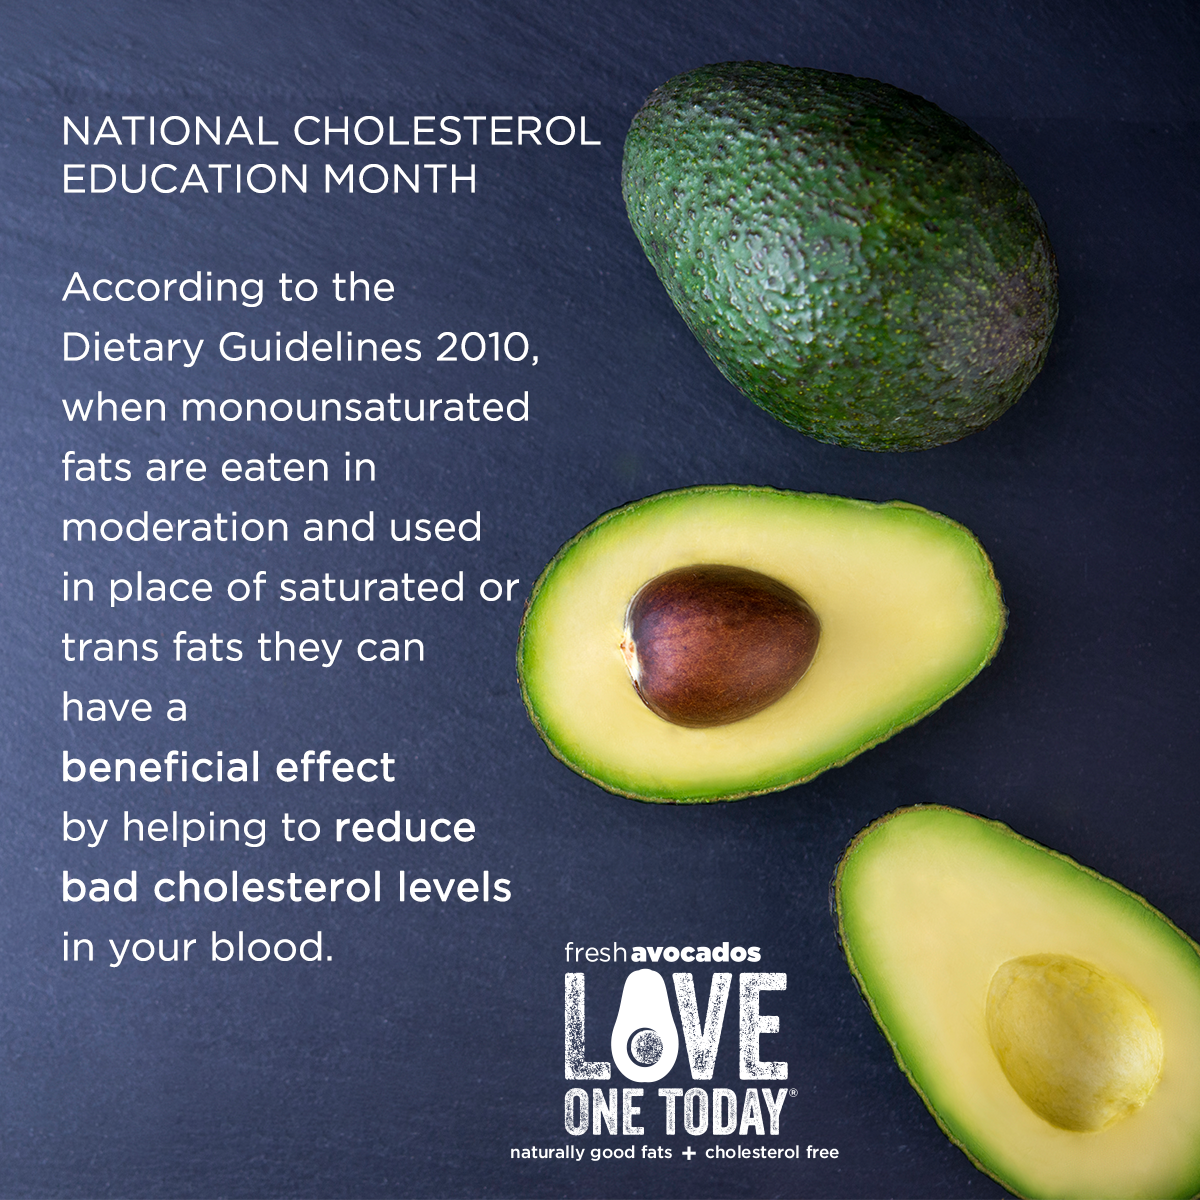 Fresh avocados. Naturally good fats + cholesterol free. # ...